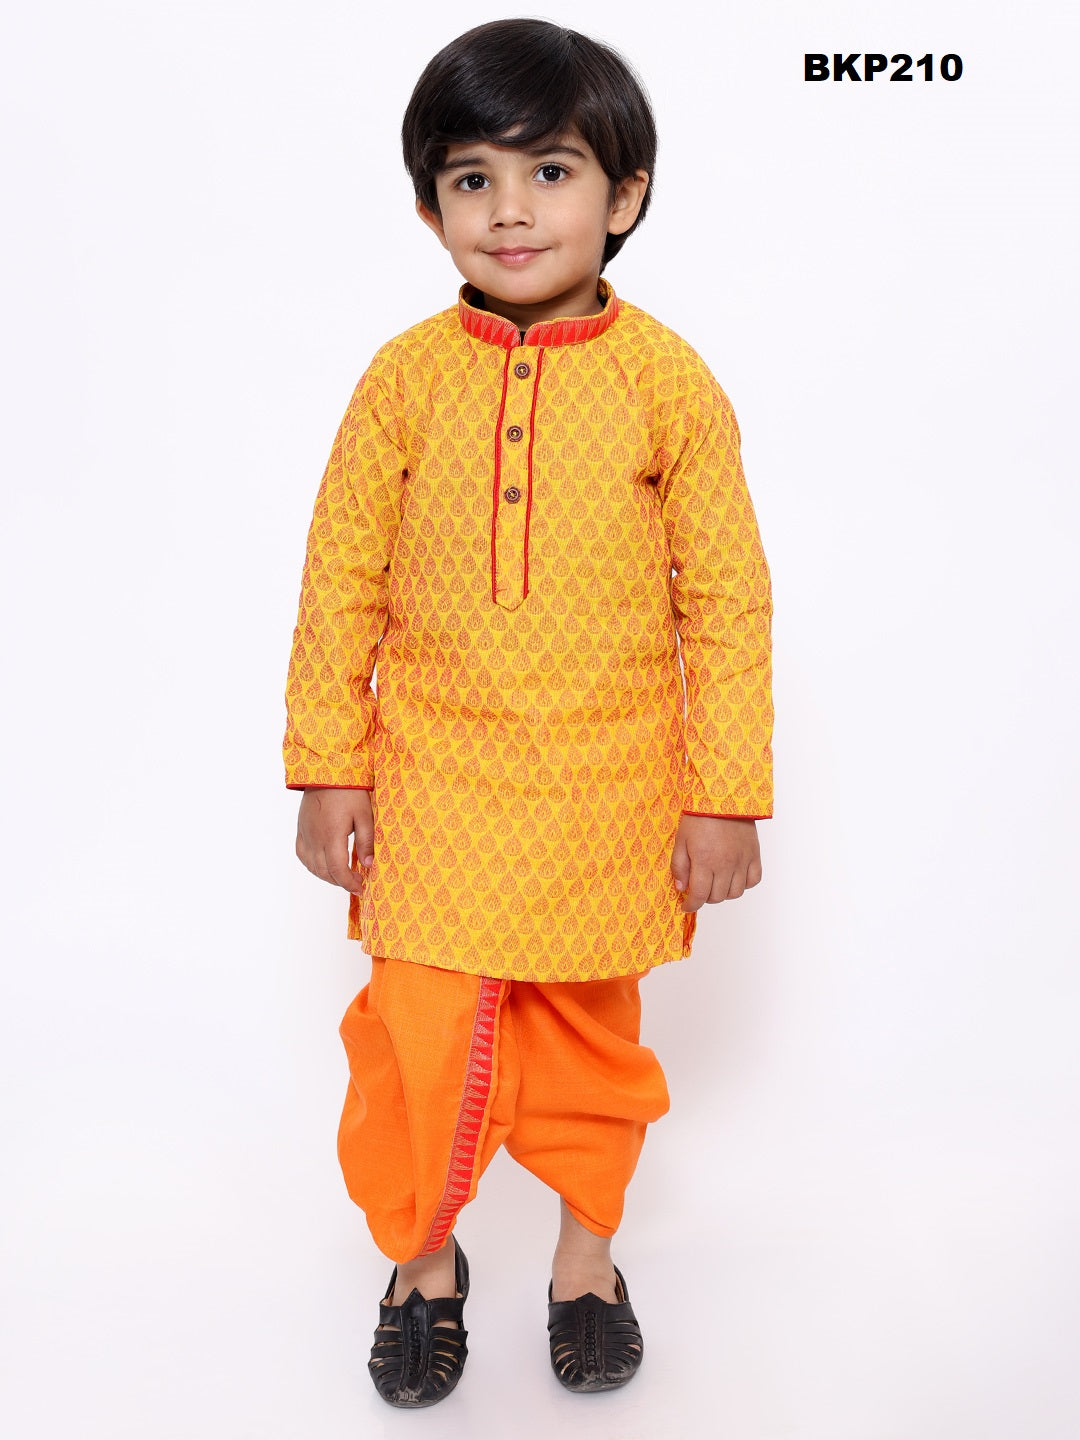 BKP210 - Toddler boys orange and yellow cotton kurta dhoti set.